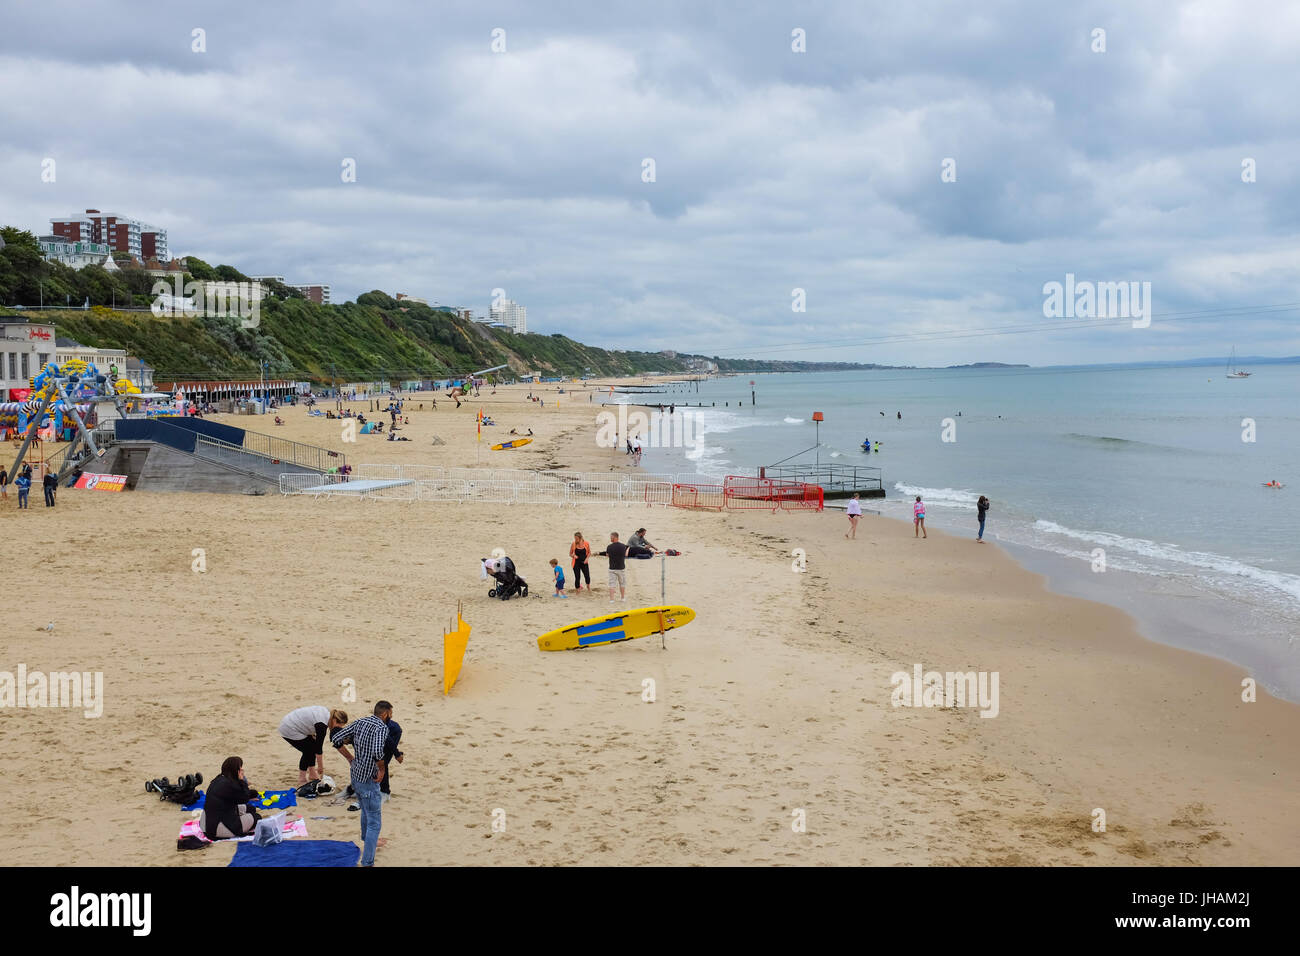 La plage de Bournemouth prises à partir de la jetée de Bournemouth, à l'Est, vers Boscombe, dans le Dorset, en Angleterre. Banque D'Images